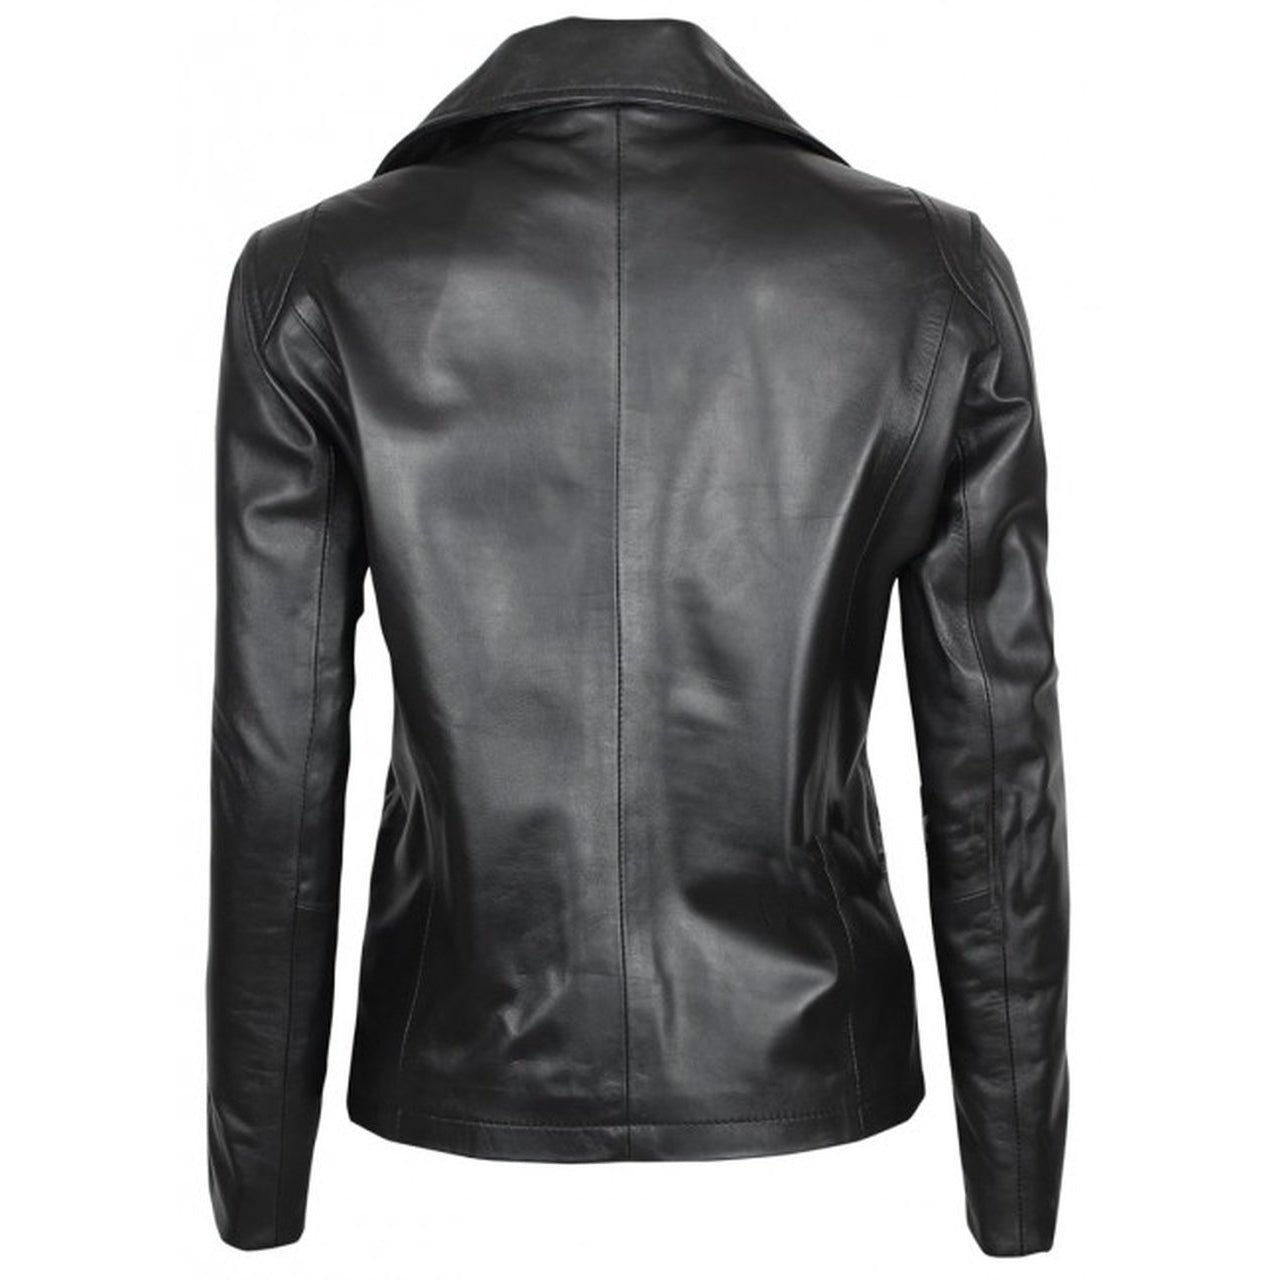 Black Women Motorcycle Leather Jacket - Leather Jacket